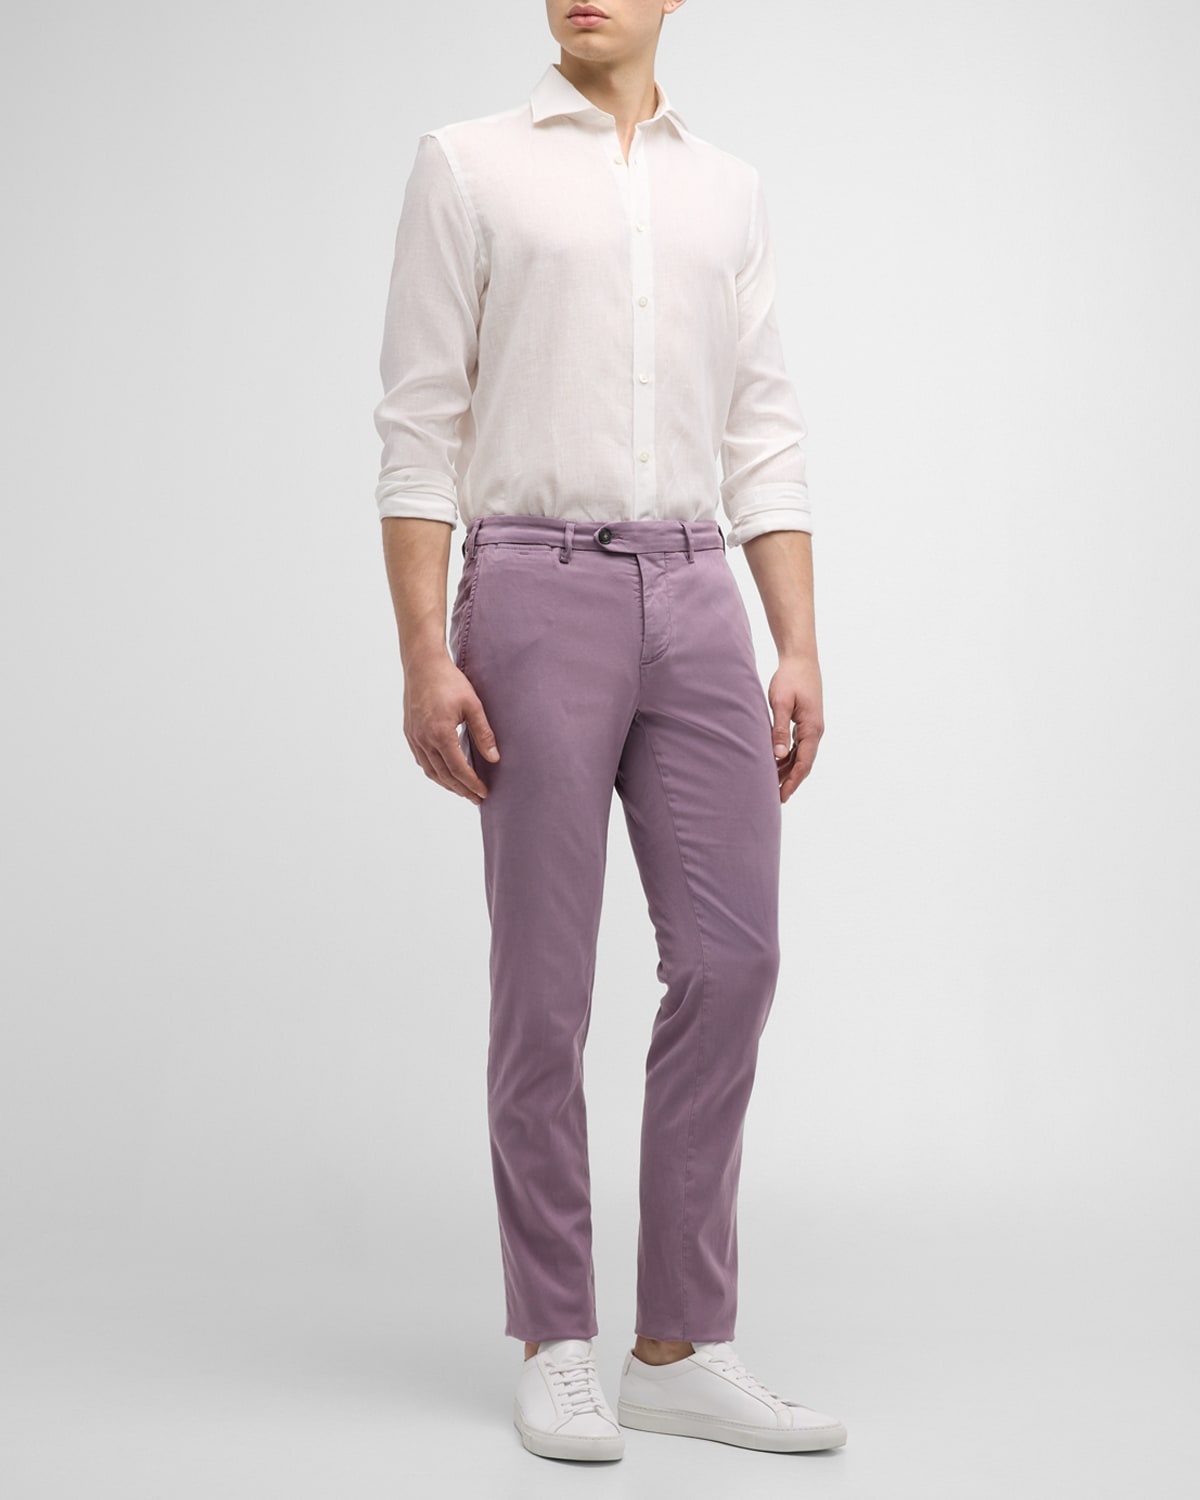 Men's Linen Casual Button-Down Shirt - 3